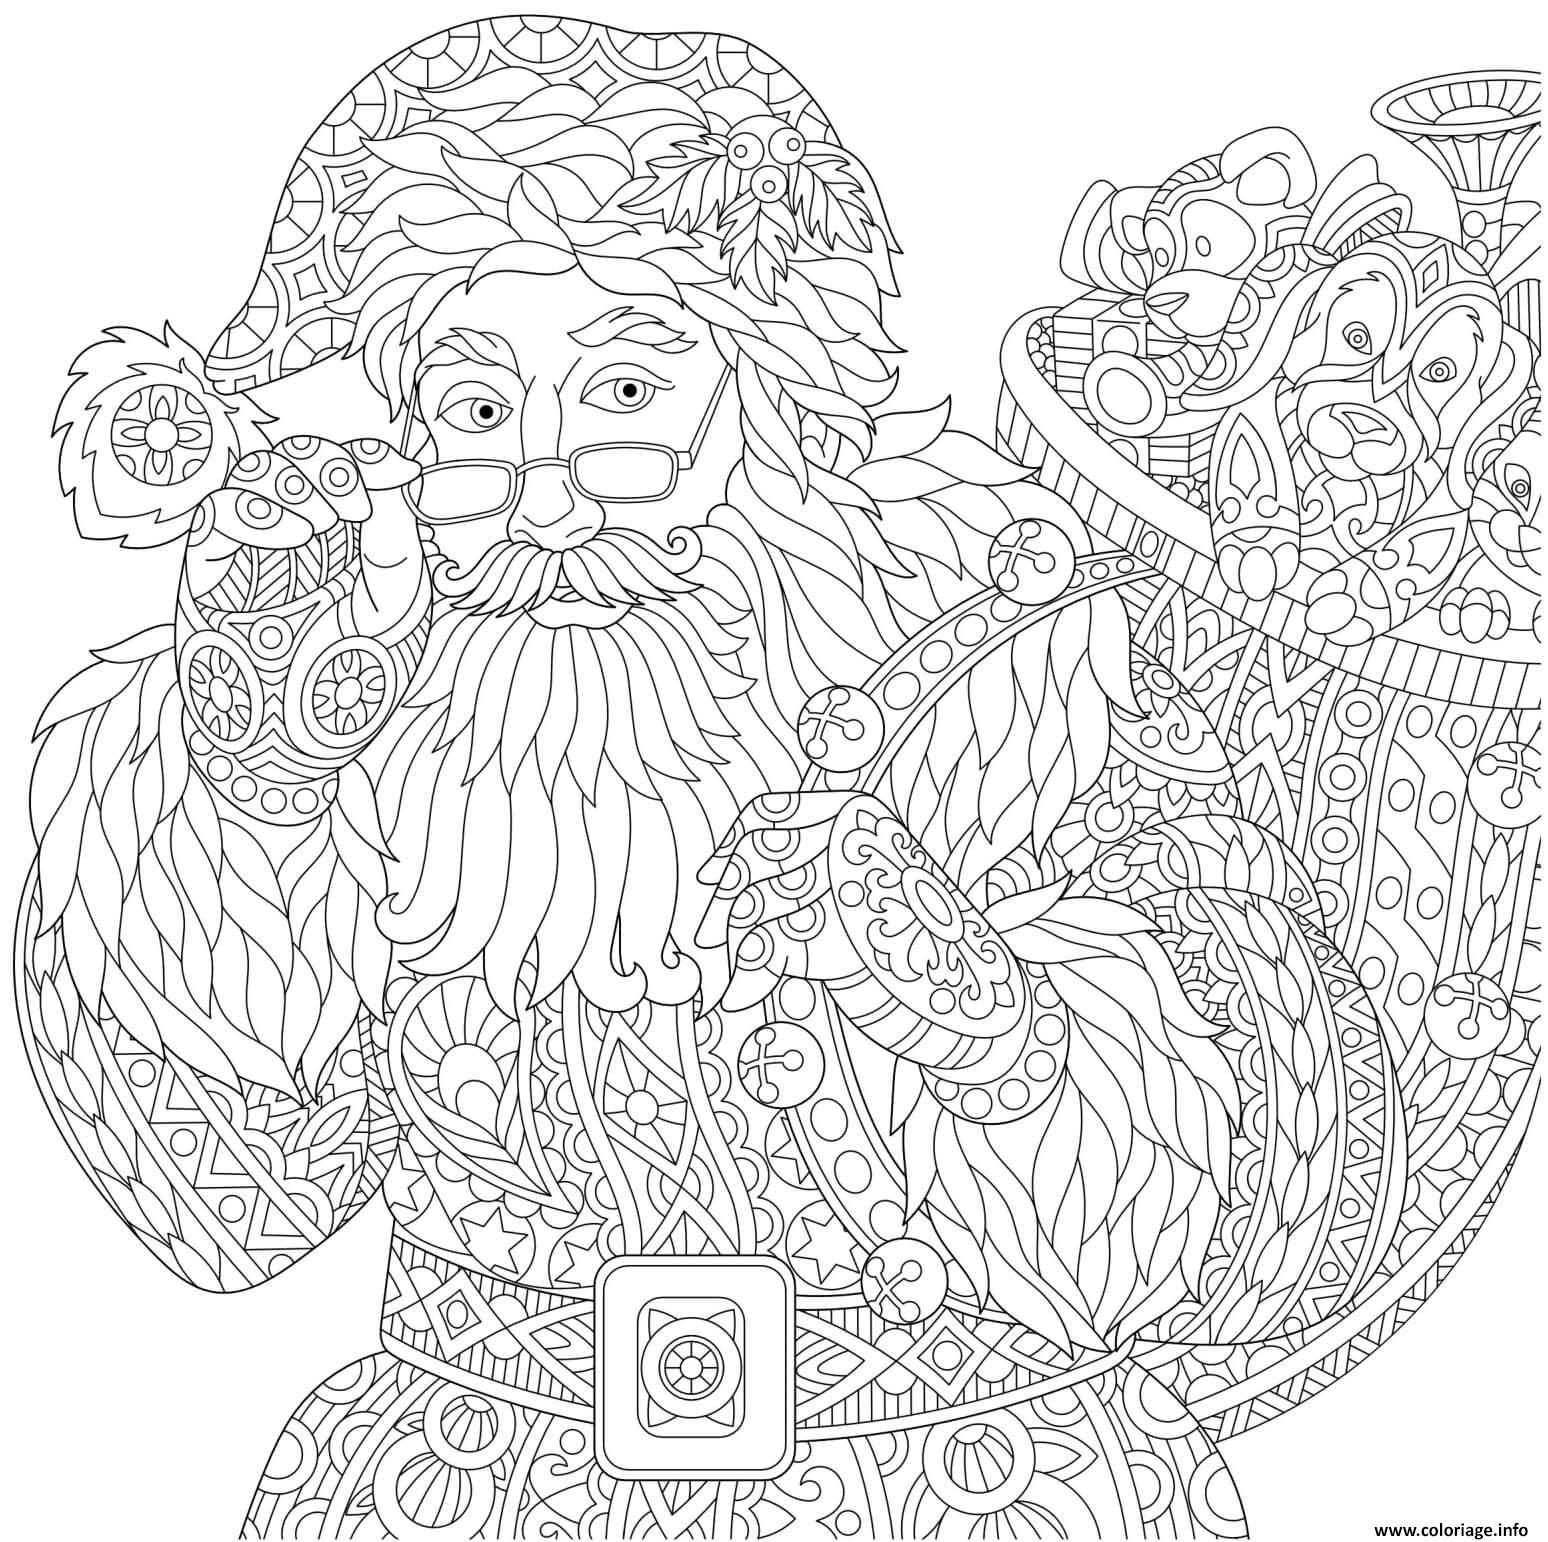 Coloriage De Noel à Imprimer Difficile  Coloriage.eu.org